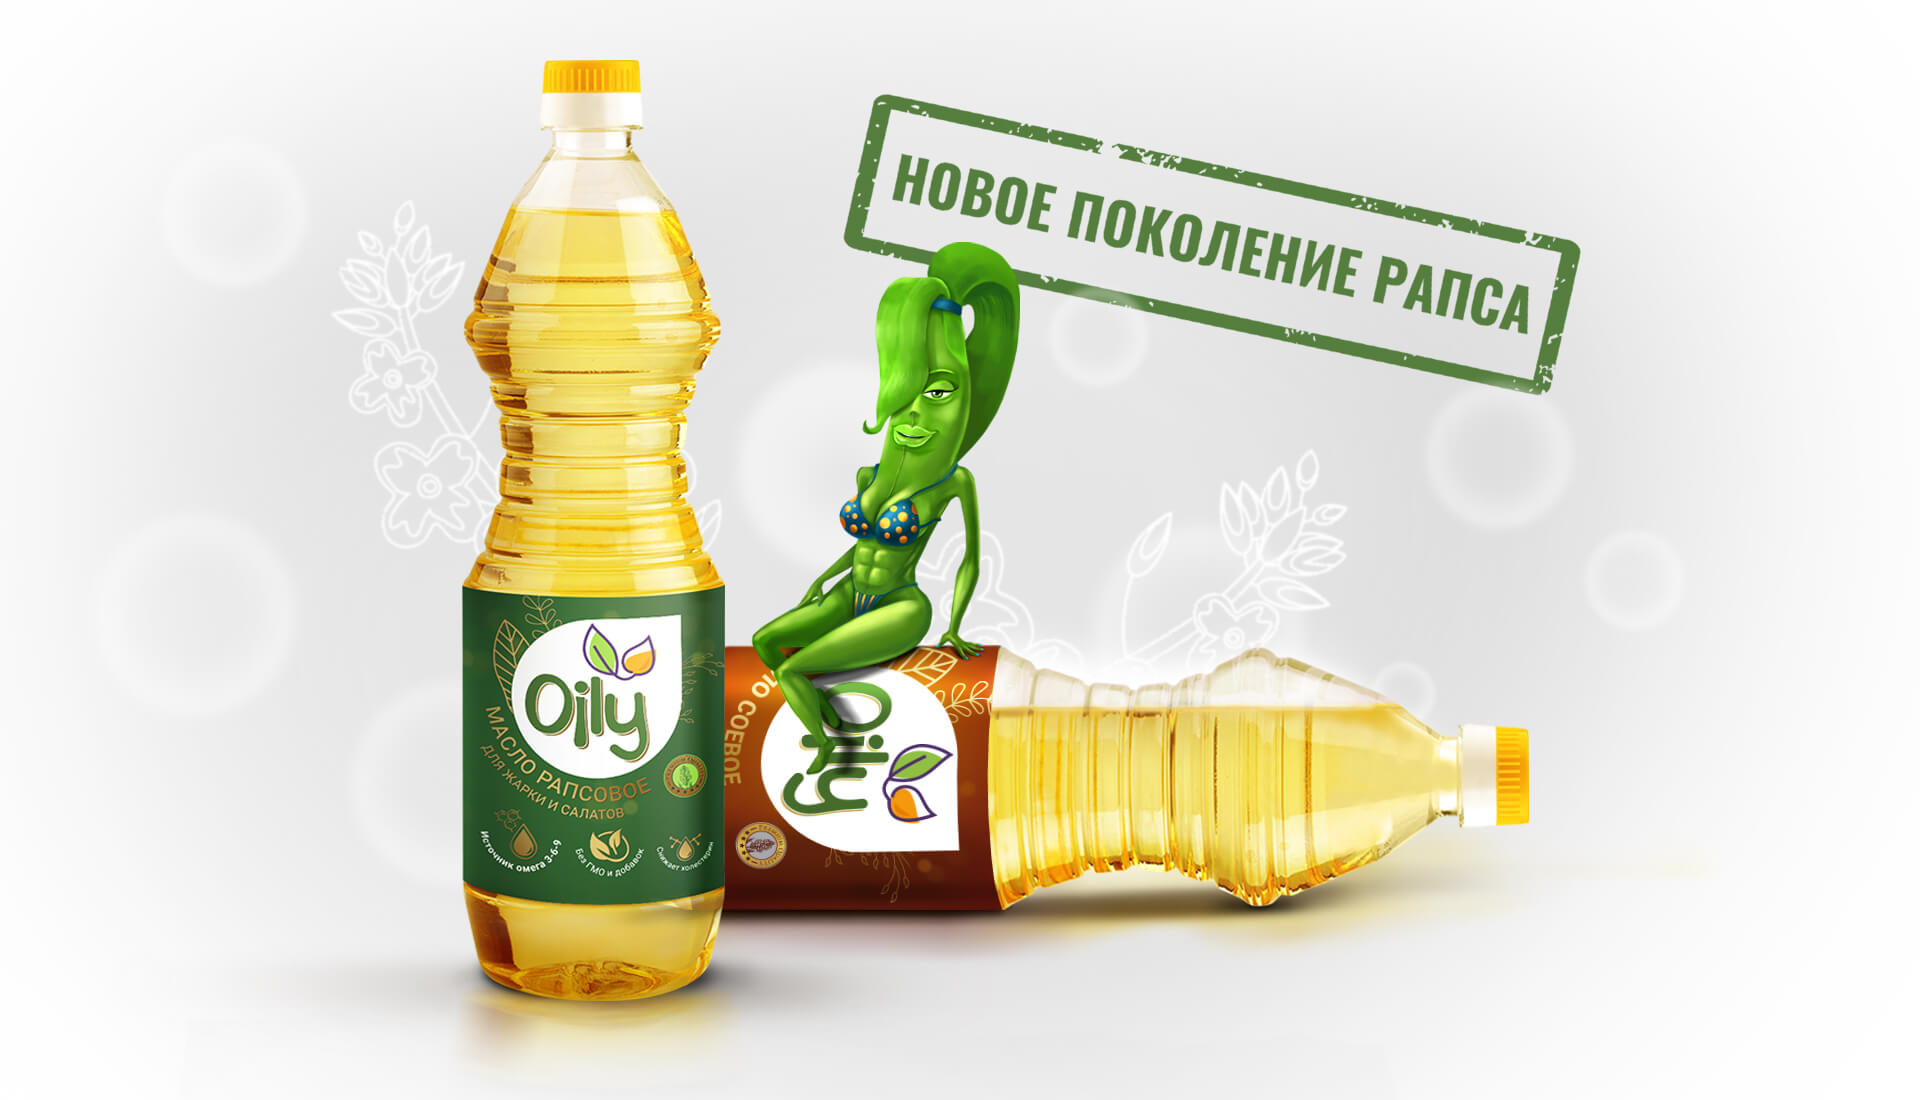 Создание нового бренда рапсового масла для ОАО "Агропродукт"